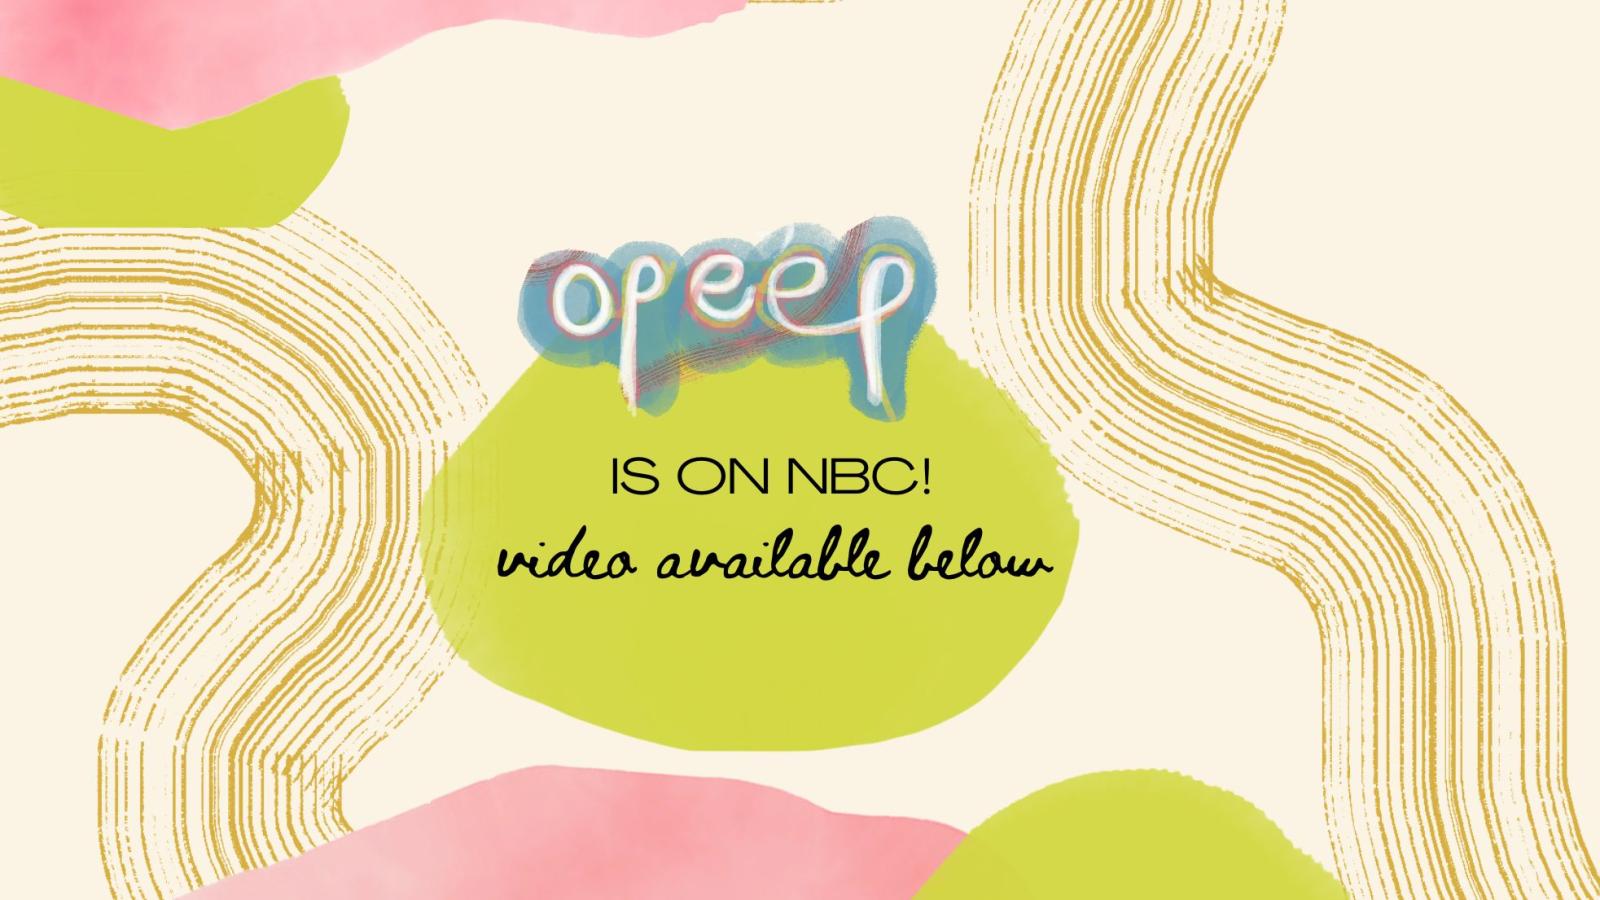 OPEEP is on NBC title slide